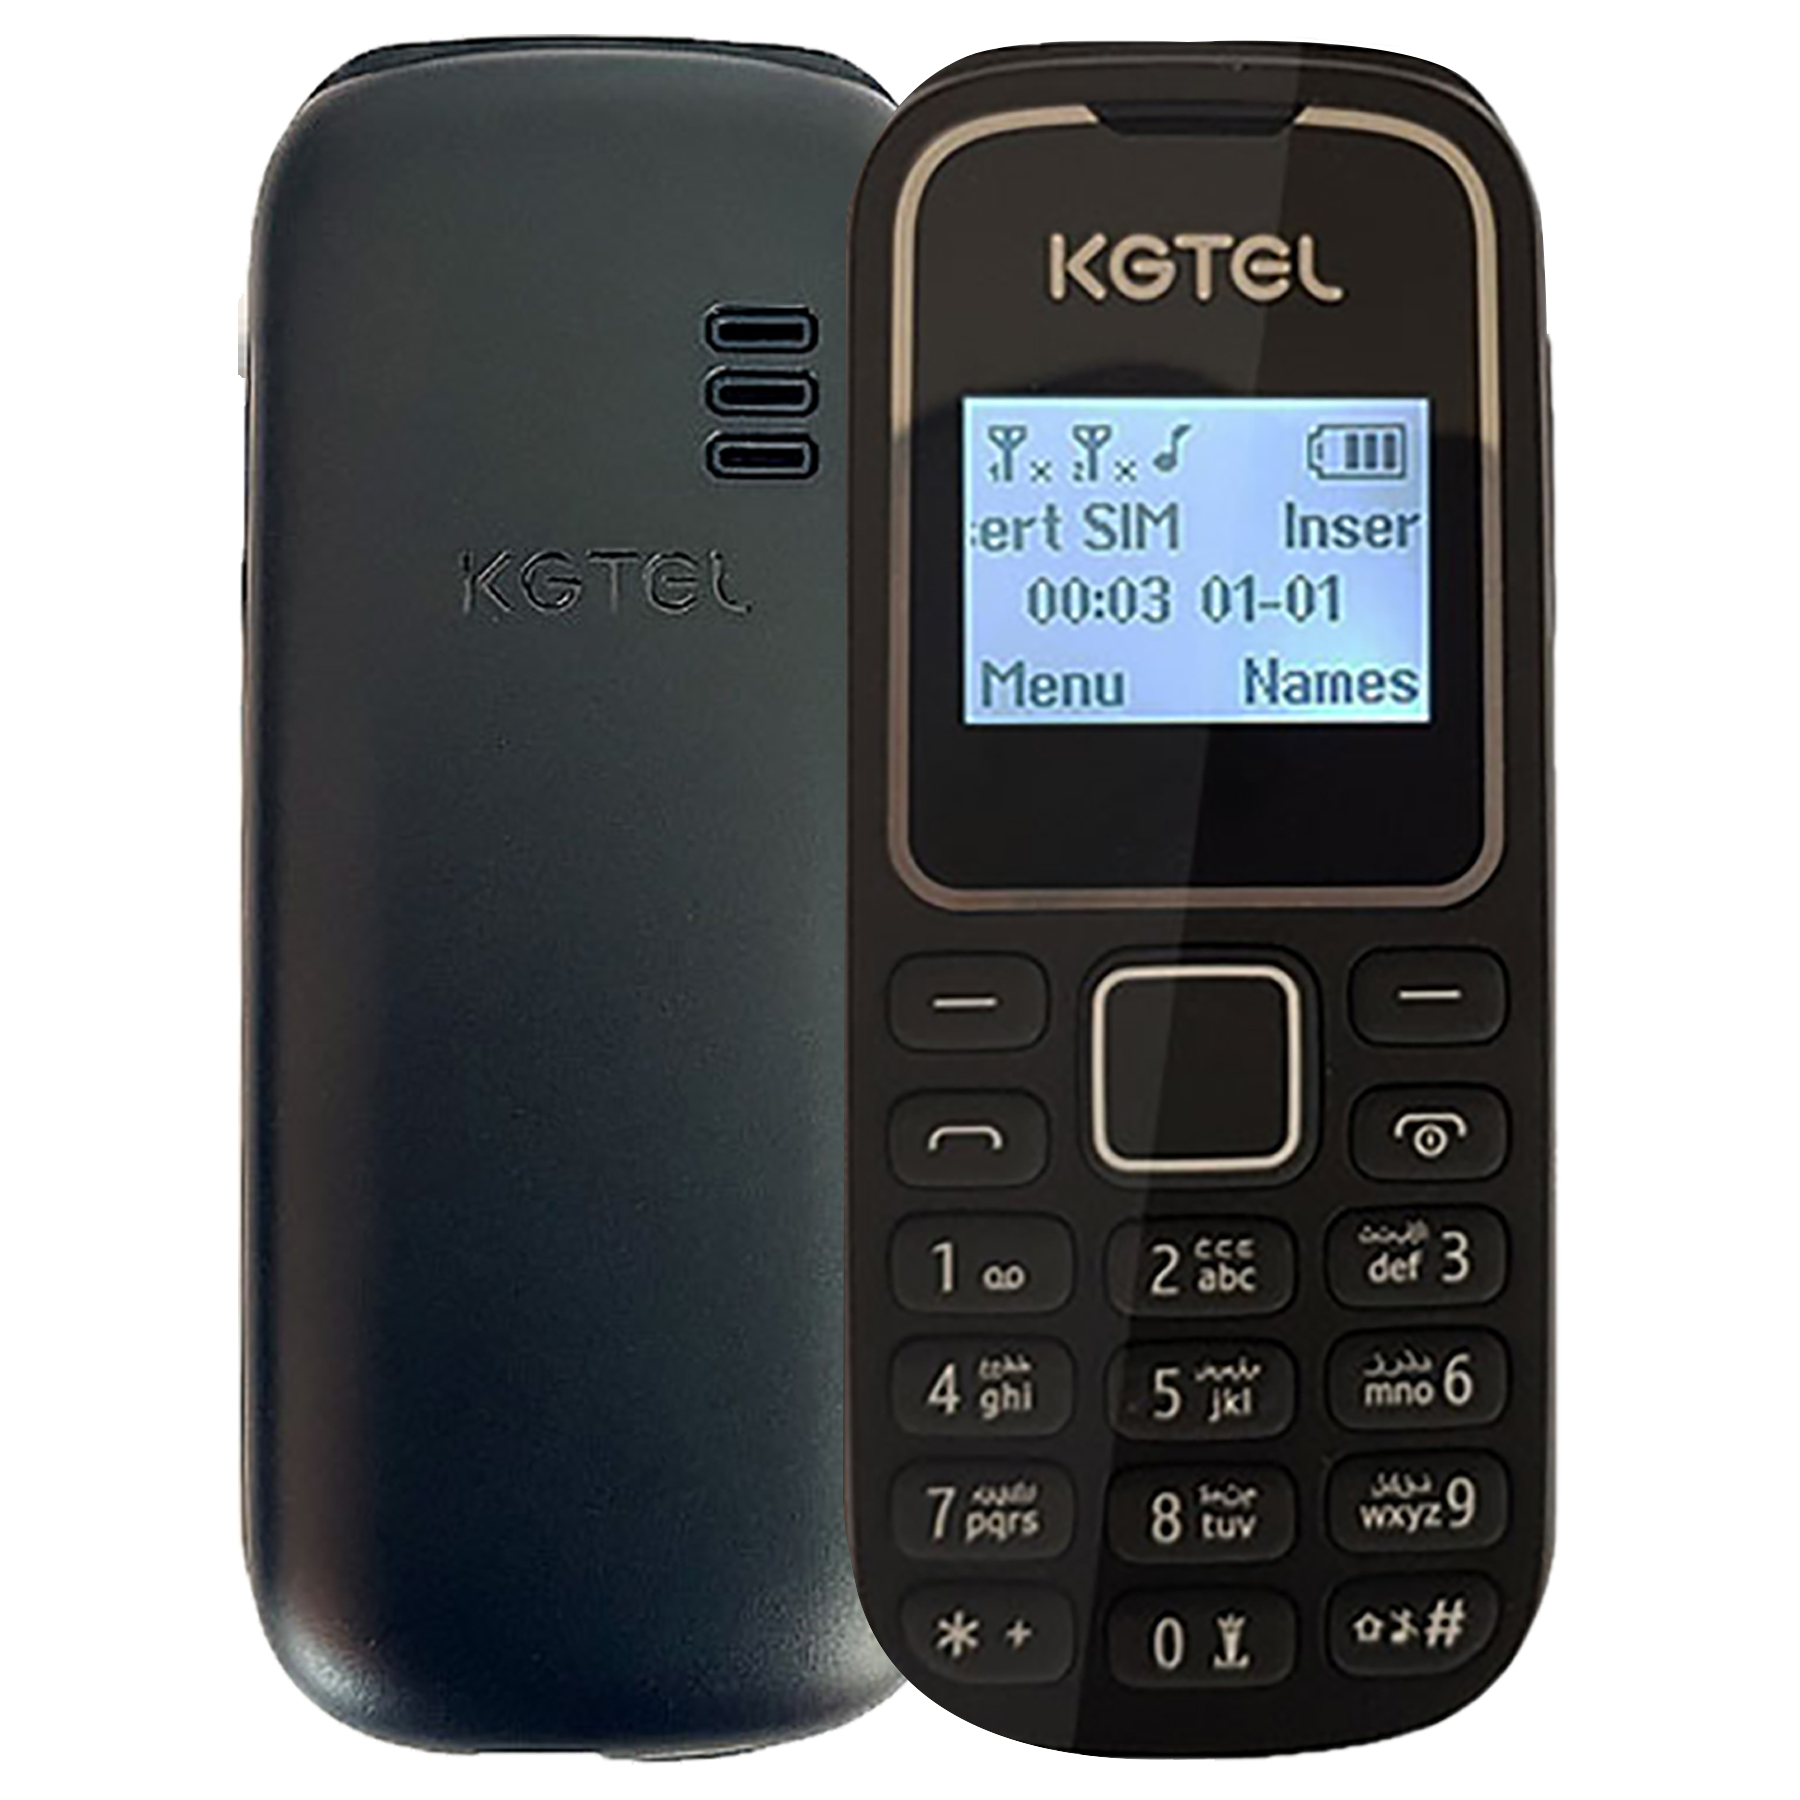 گوشی موبایل کاجیتل مدل KG1280 دو سیم کارت ظرفیت 4 مگابایت و رم 4 مگابایت 